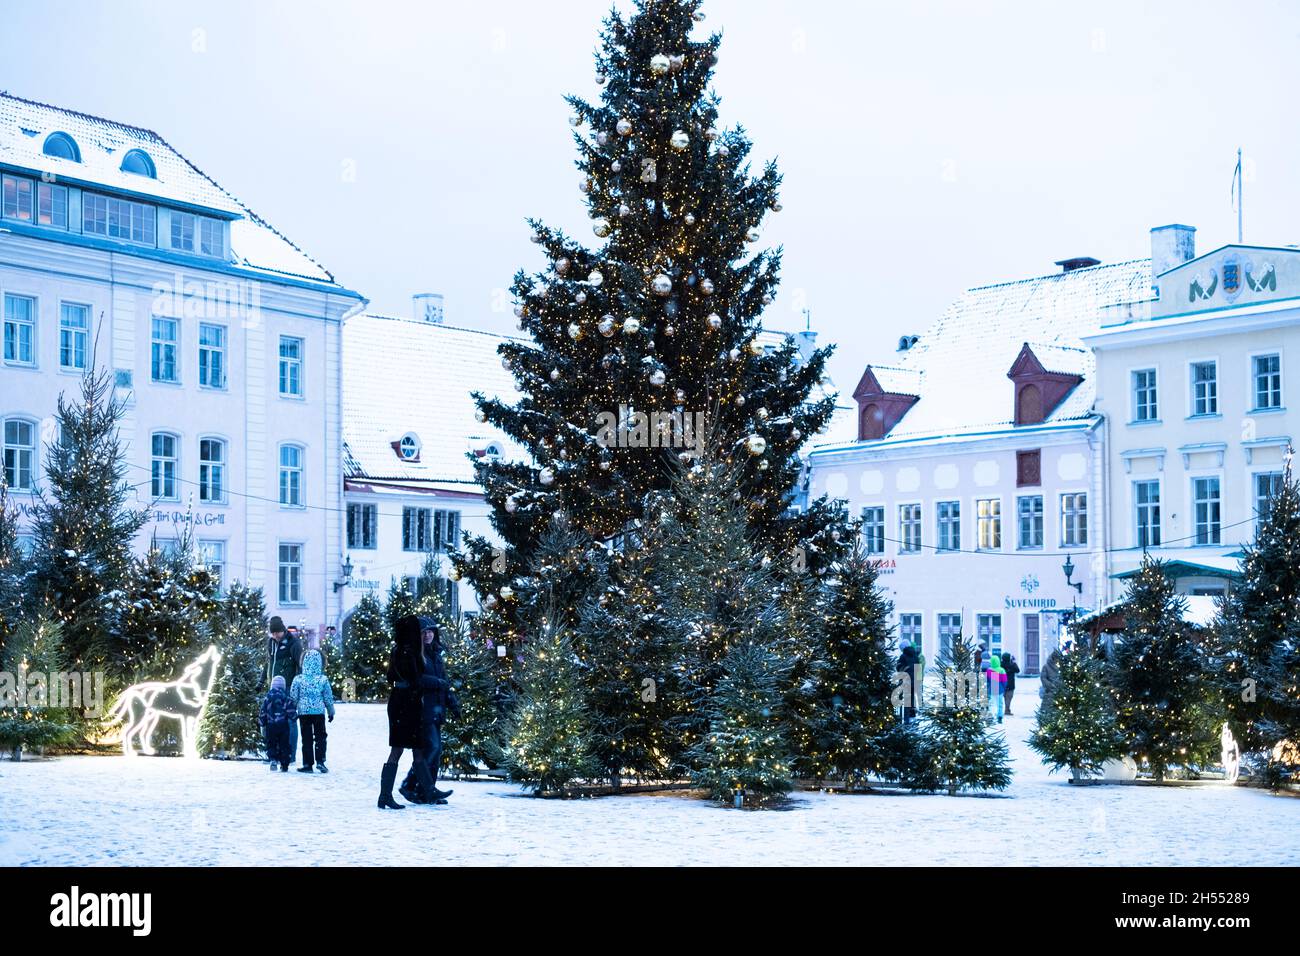 Weihnachtsbaum auf dem zentralen Platz der Altstadt von Tallinn. Nordische Weihnachtsdekoration in Tallinn. Stockfoto